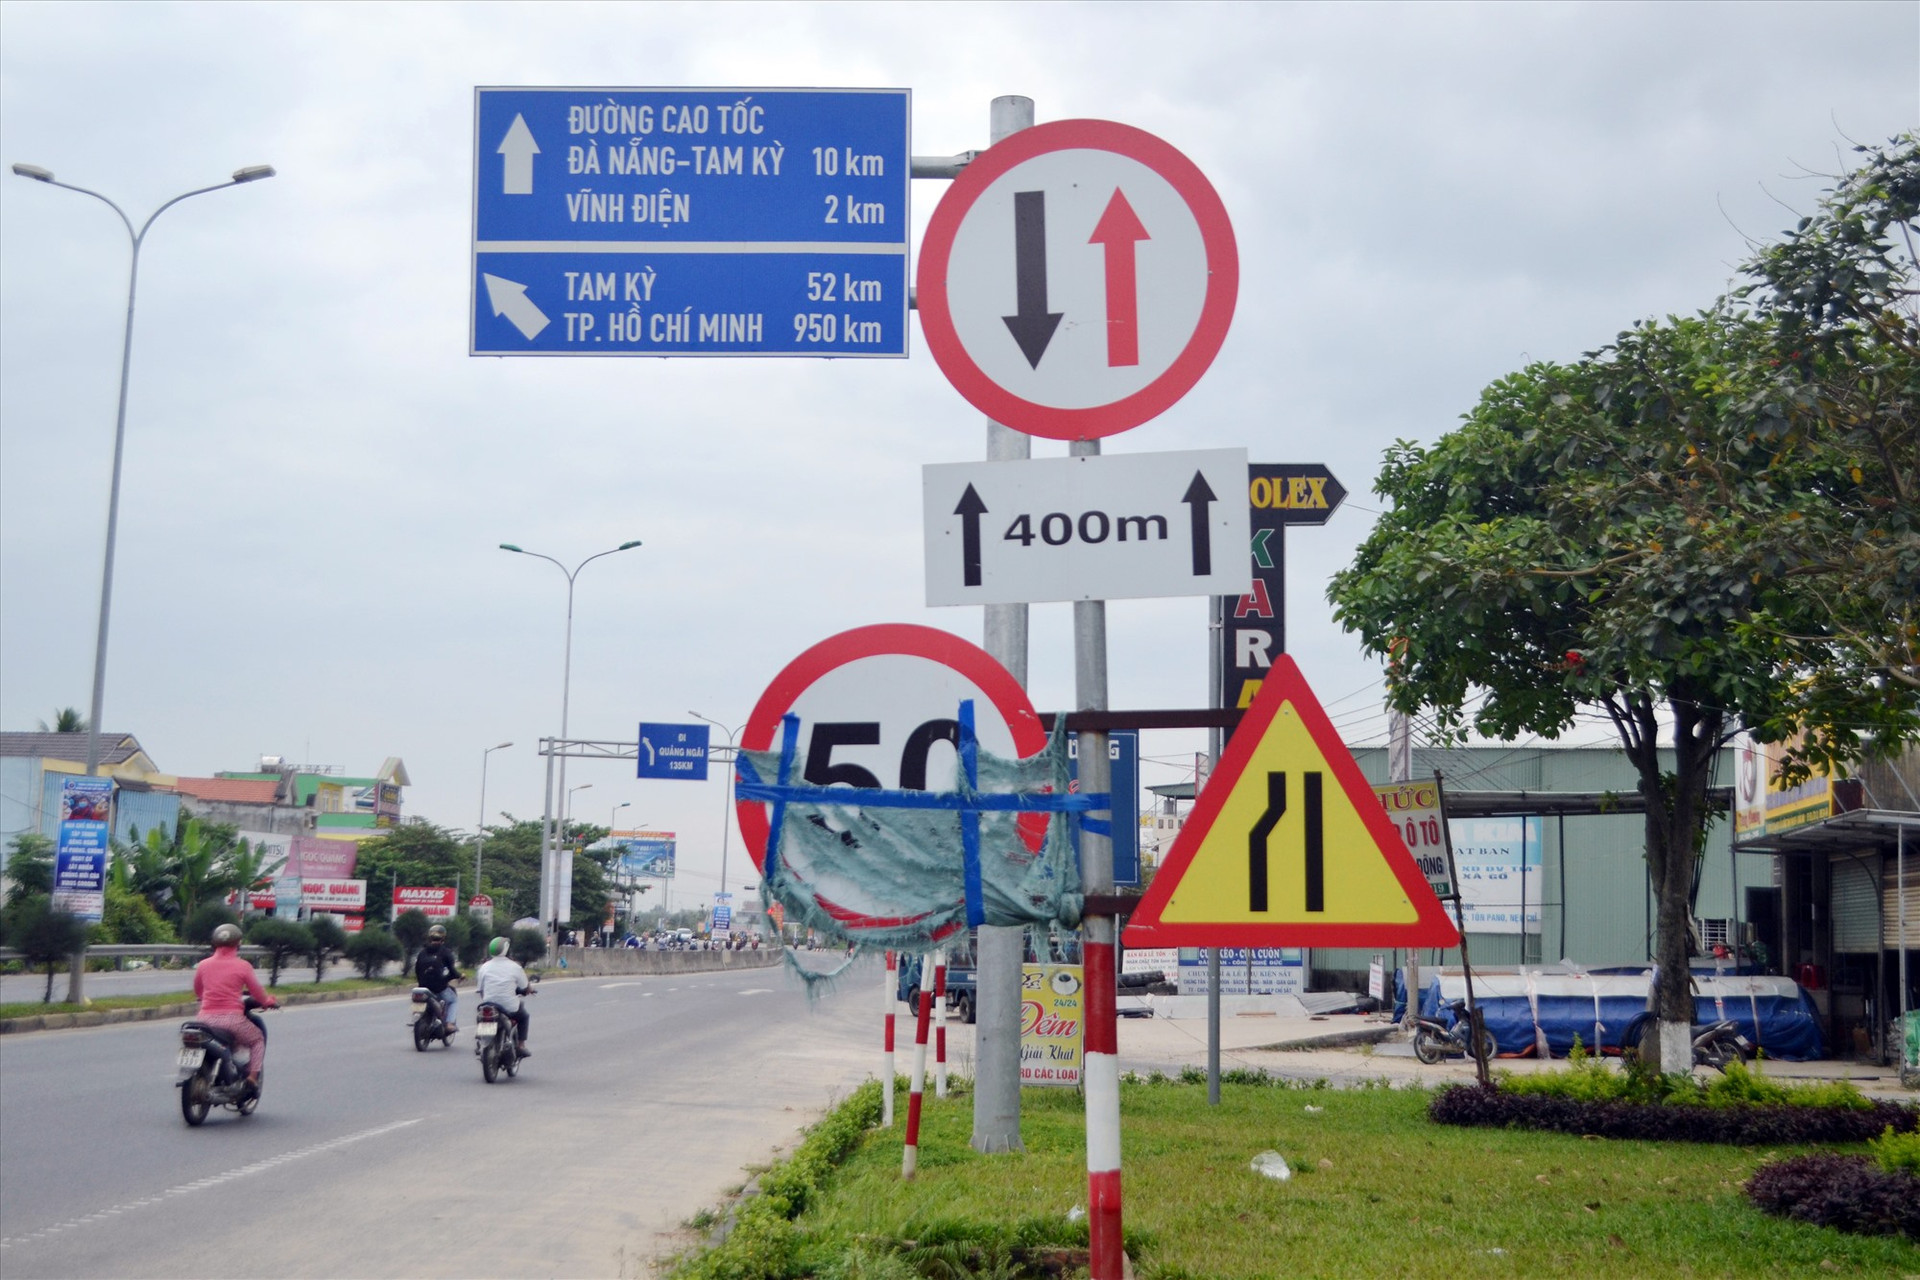 Biển hạn chế tốc độ trên quốc lộ 1 qua phường Điện An (Điện Bàn) bị che chắn mất mỹ quan. Ảnh: K.K